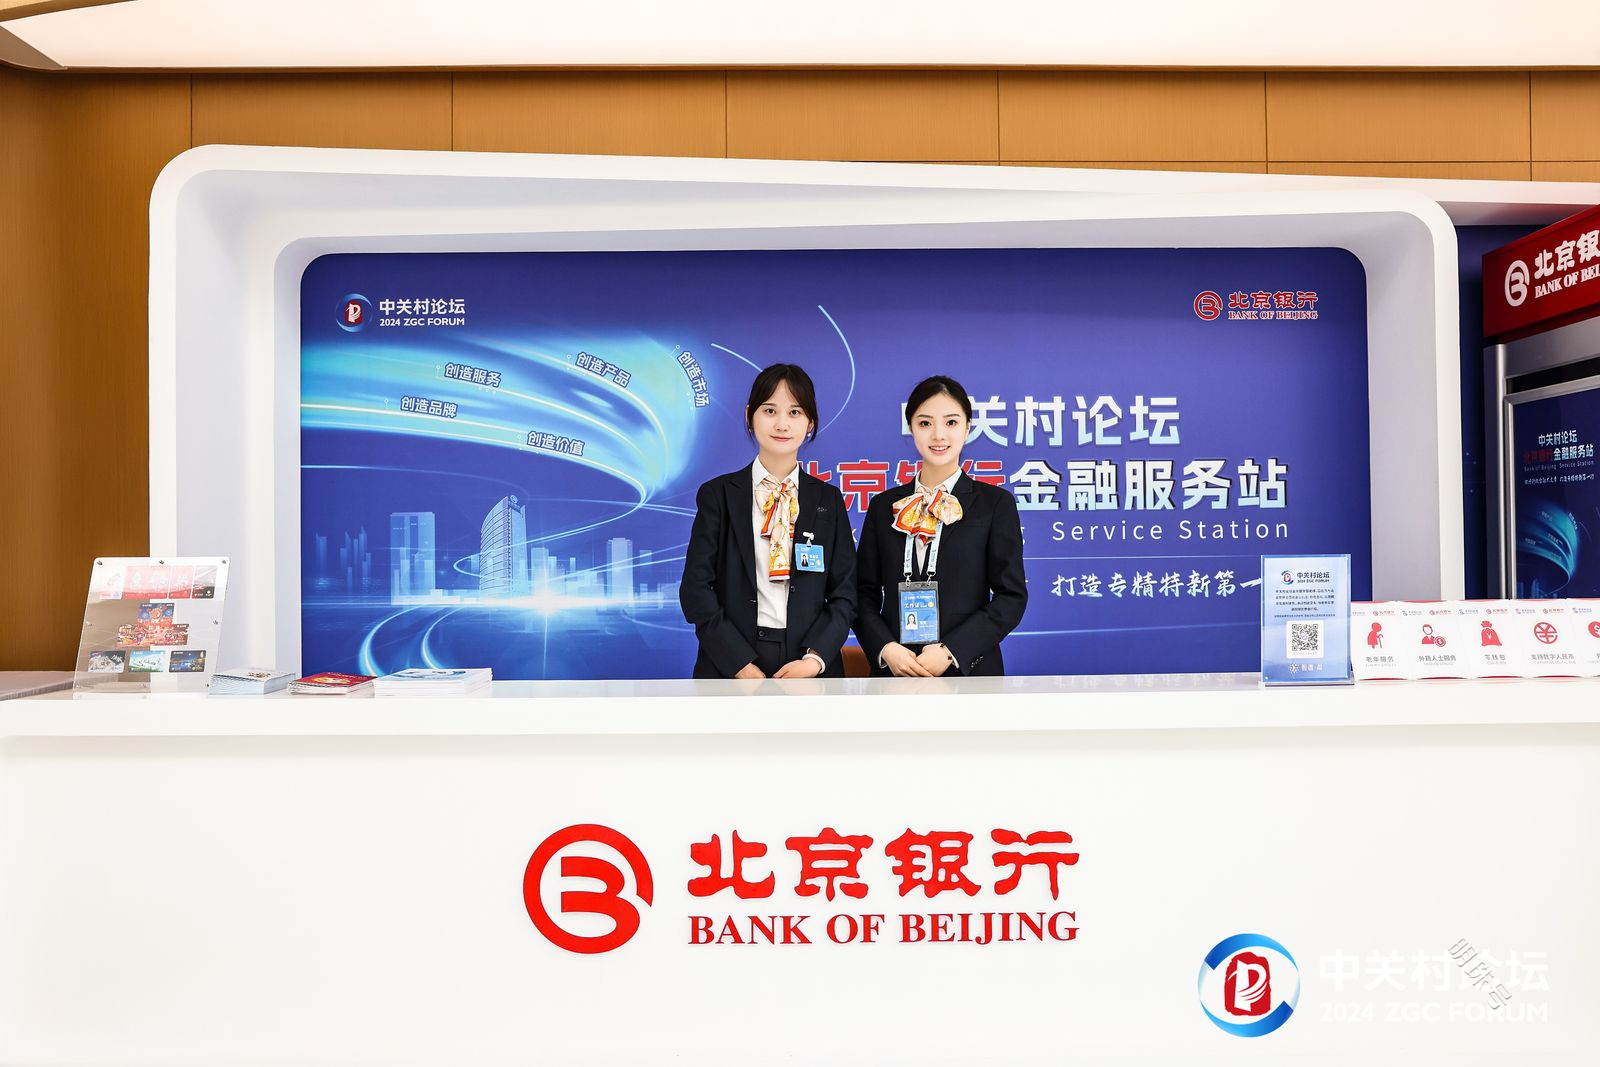 行业解决方案:北京银行探索“科创金融”服务机制创新，打造专营体制专业队伍 4